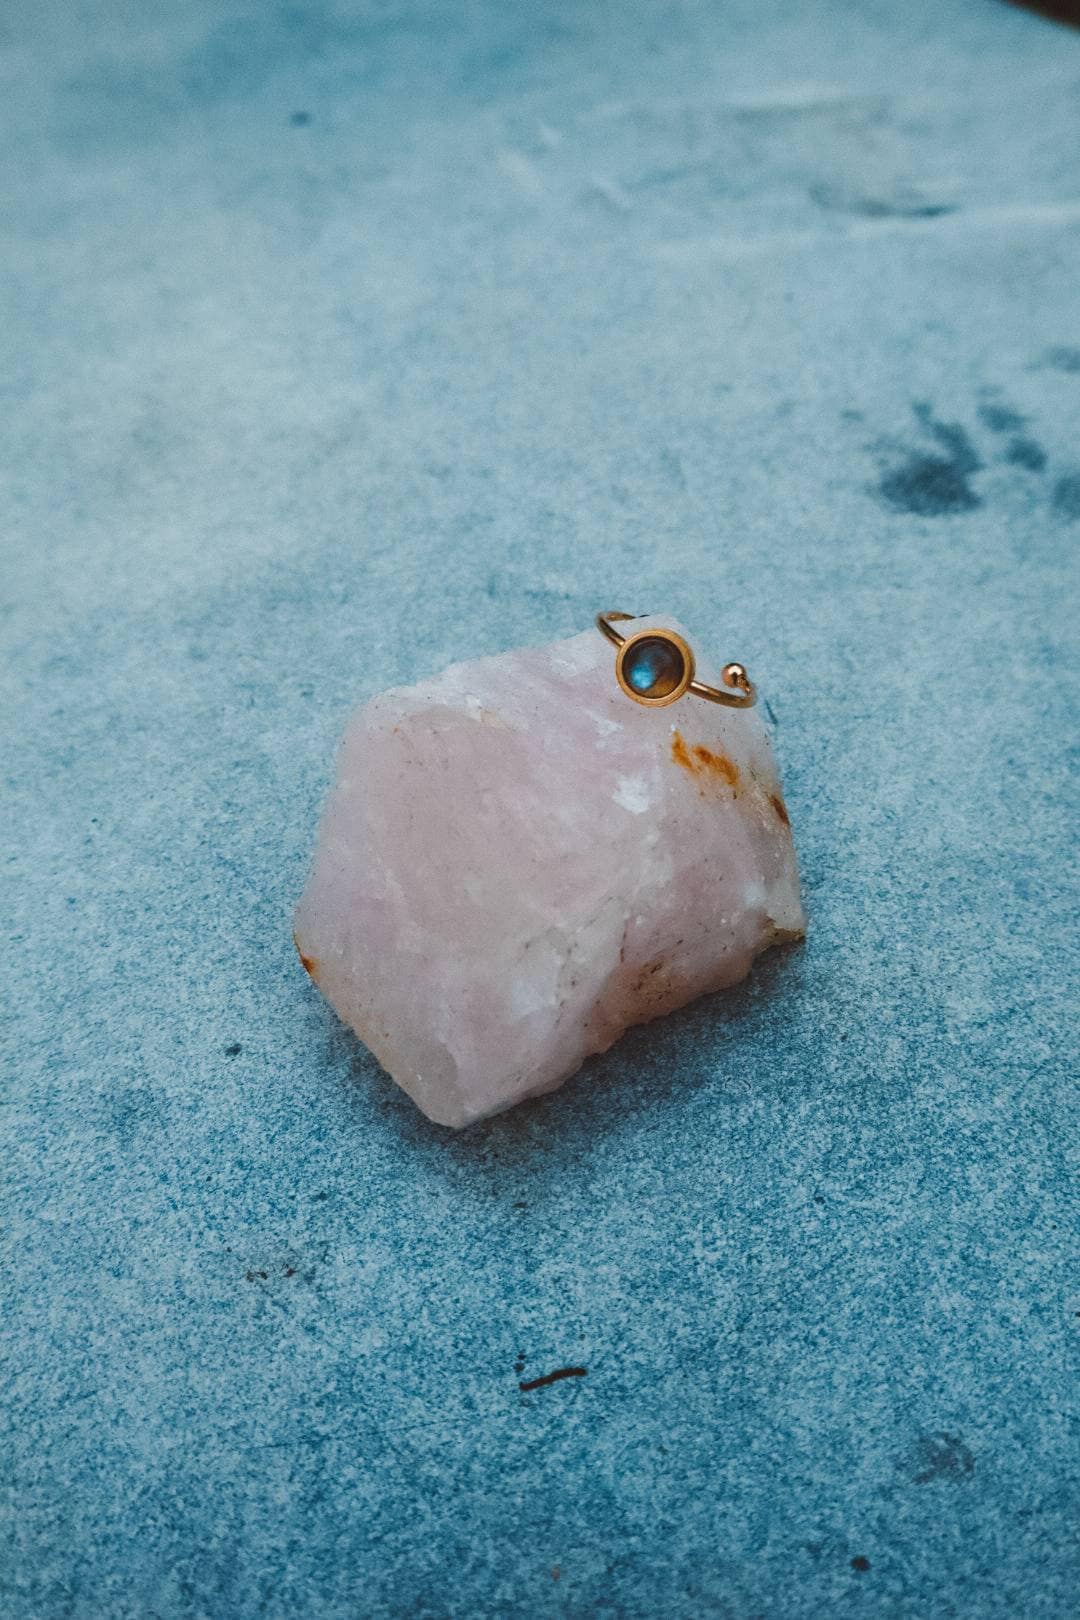 Dainty Labradorite Ring - Rose Gold